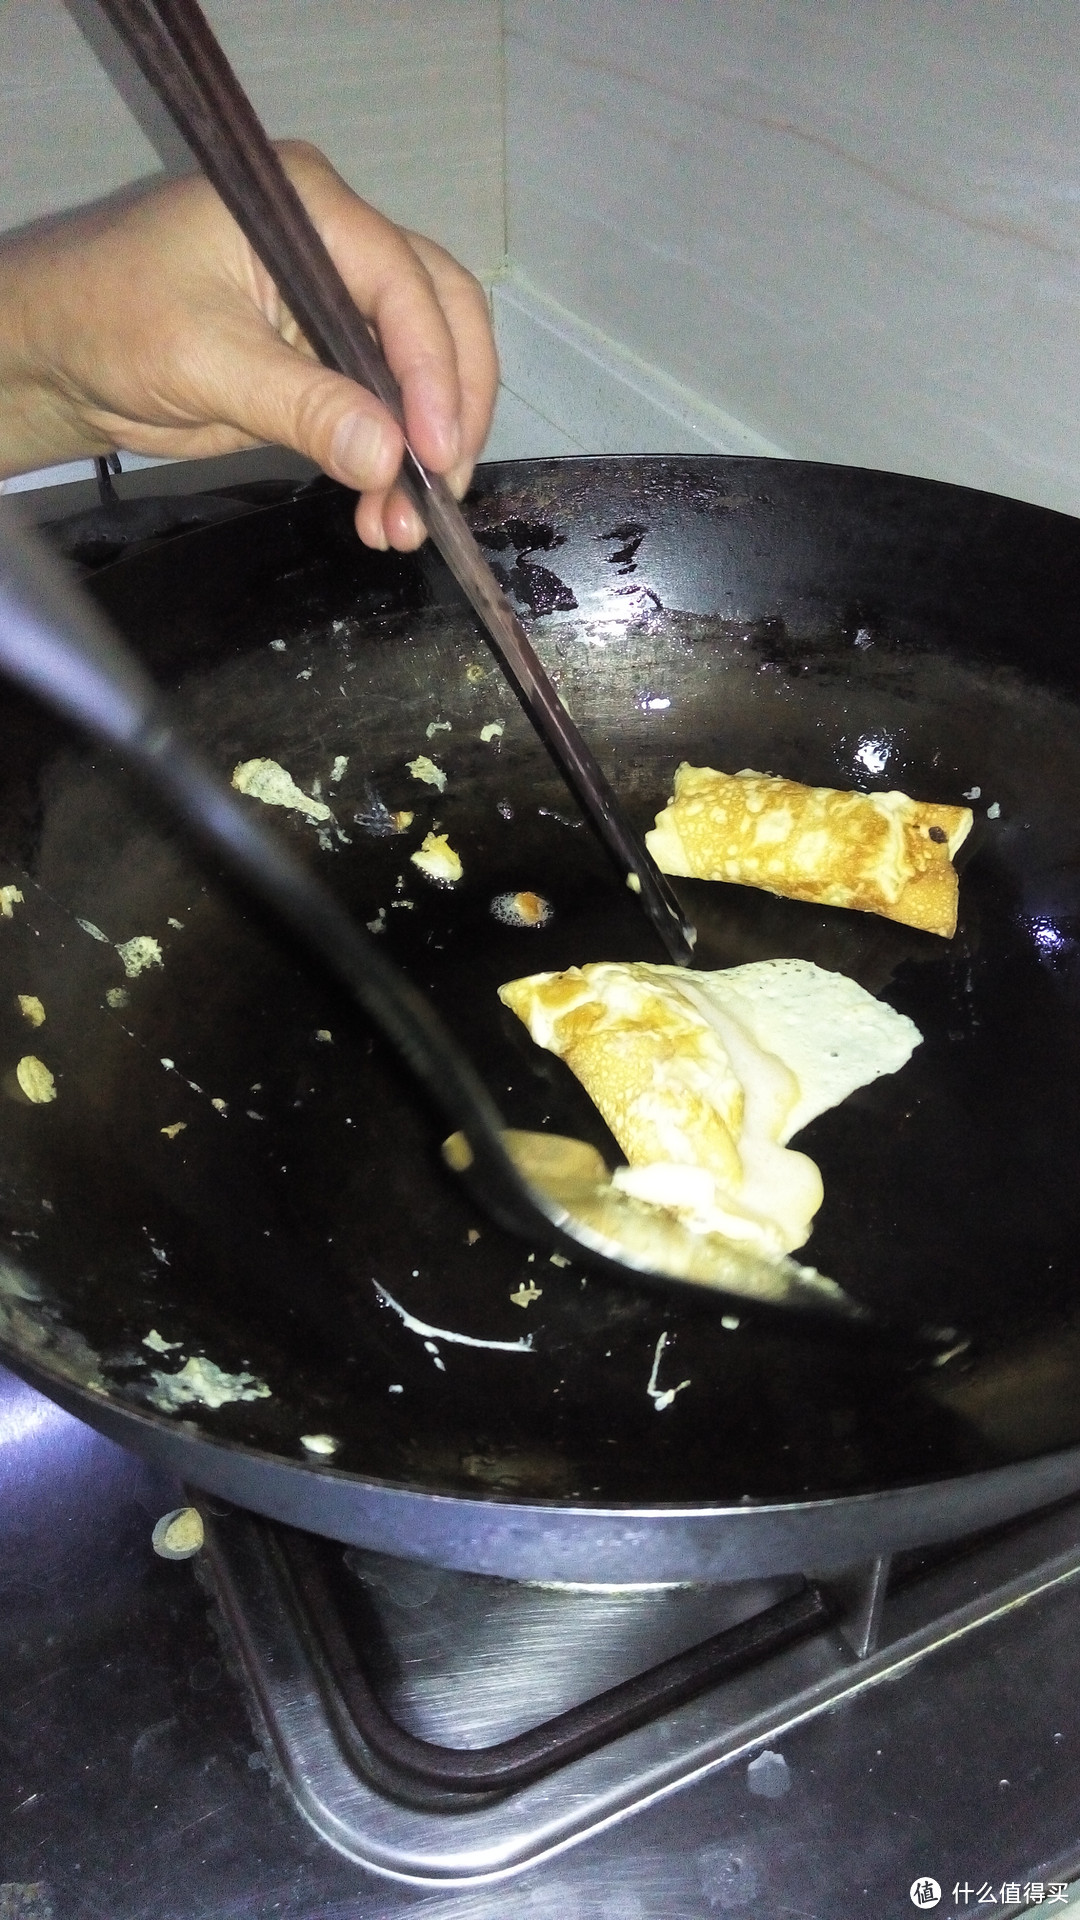 三代传承的厨艺，不二传的蛋饺制作工艺